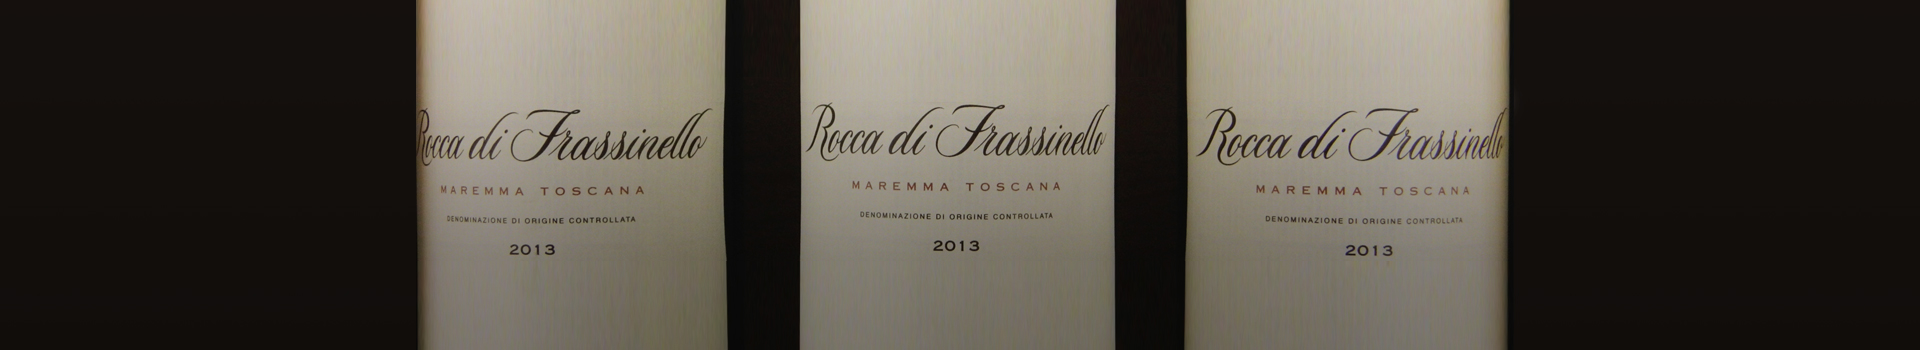 2013年罗伯特帕克评给法斯尼洛酒庄的95分